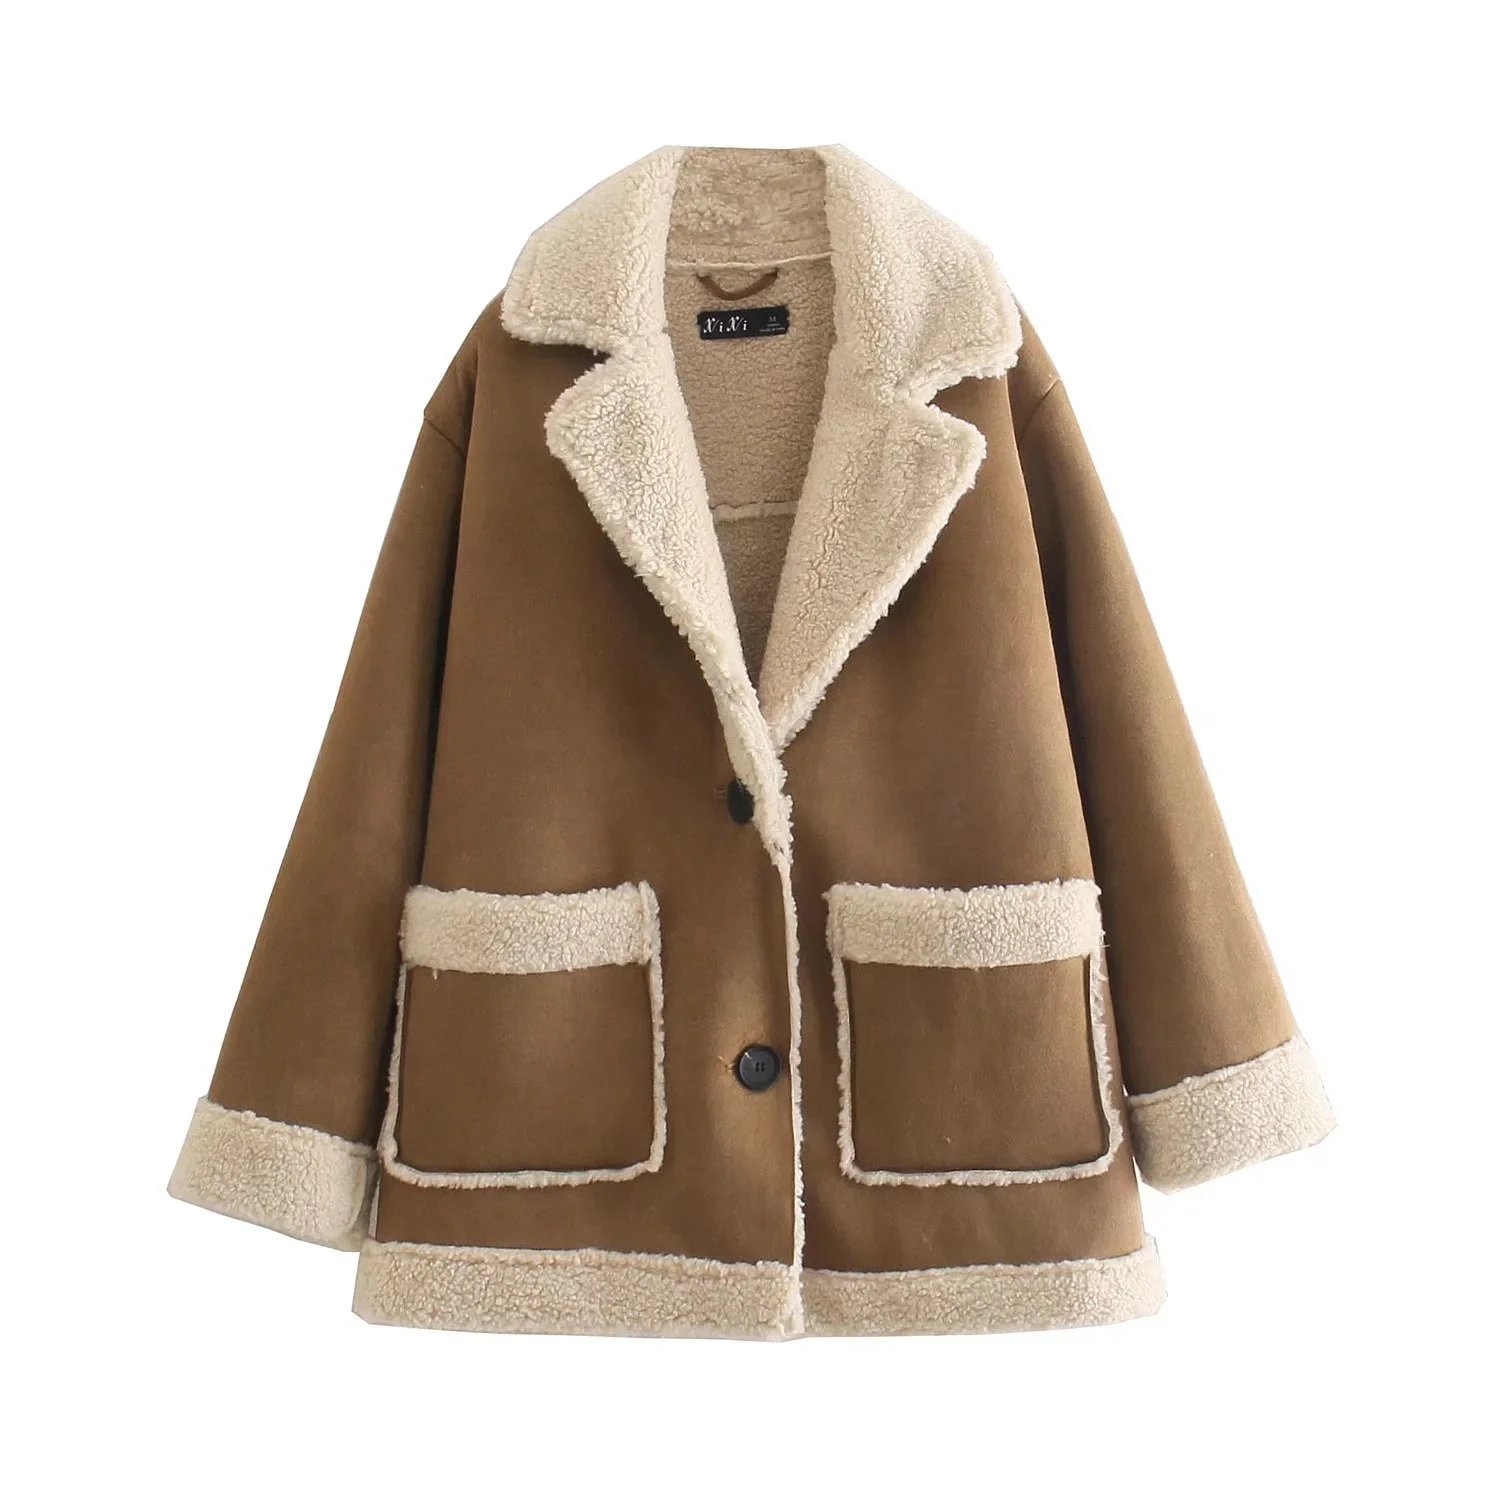 

New Winter Thicken Warm Faux Lambskin Jacket Coat Women Casual Fashion Lamb Faux Fur Overcoat Fluffy Cozy Oversize Outerwear